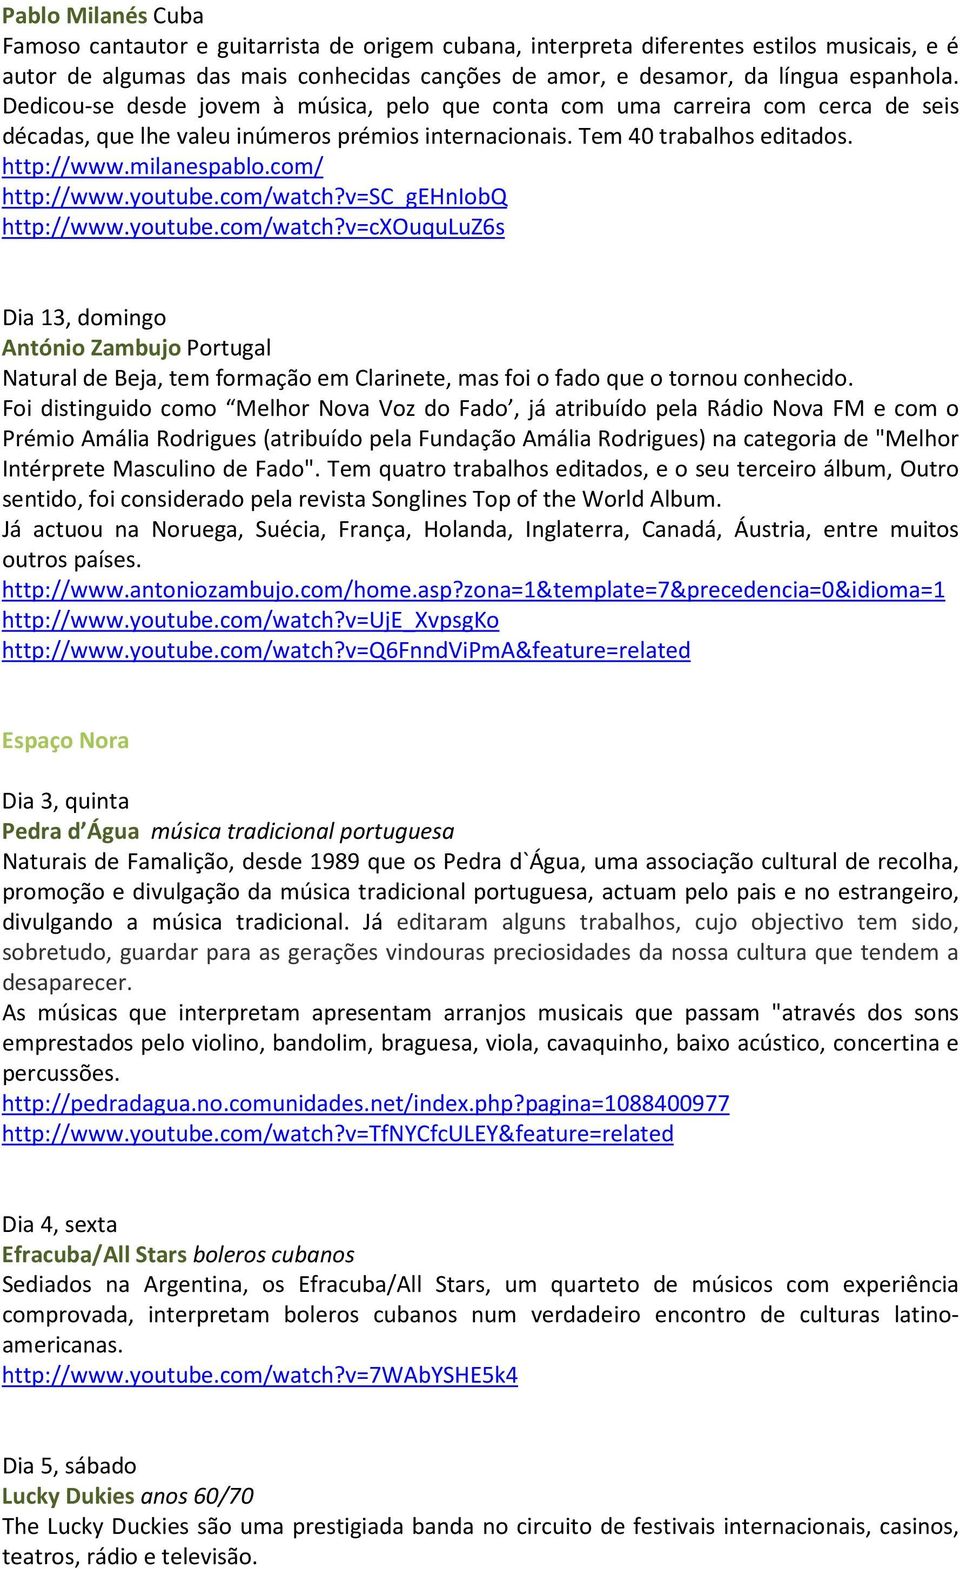 com/ http://www.youtube.com/watch?v=sc_gehniobq http://www.youtube.com/watch?v=cxouquluz6s Dia 13, domingo António Zambujo Portugal Natural de Beja, tem formação em Clarinete, mas foi o fado que o tornou conhecido.